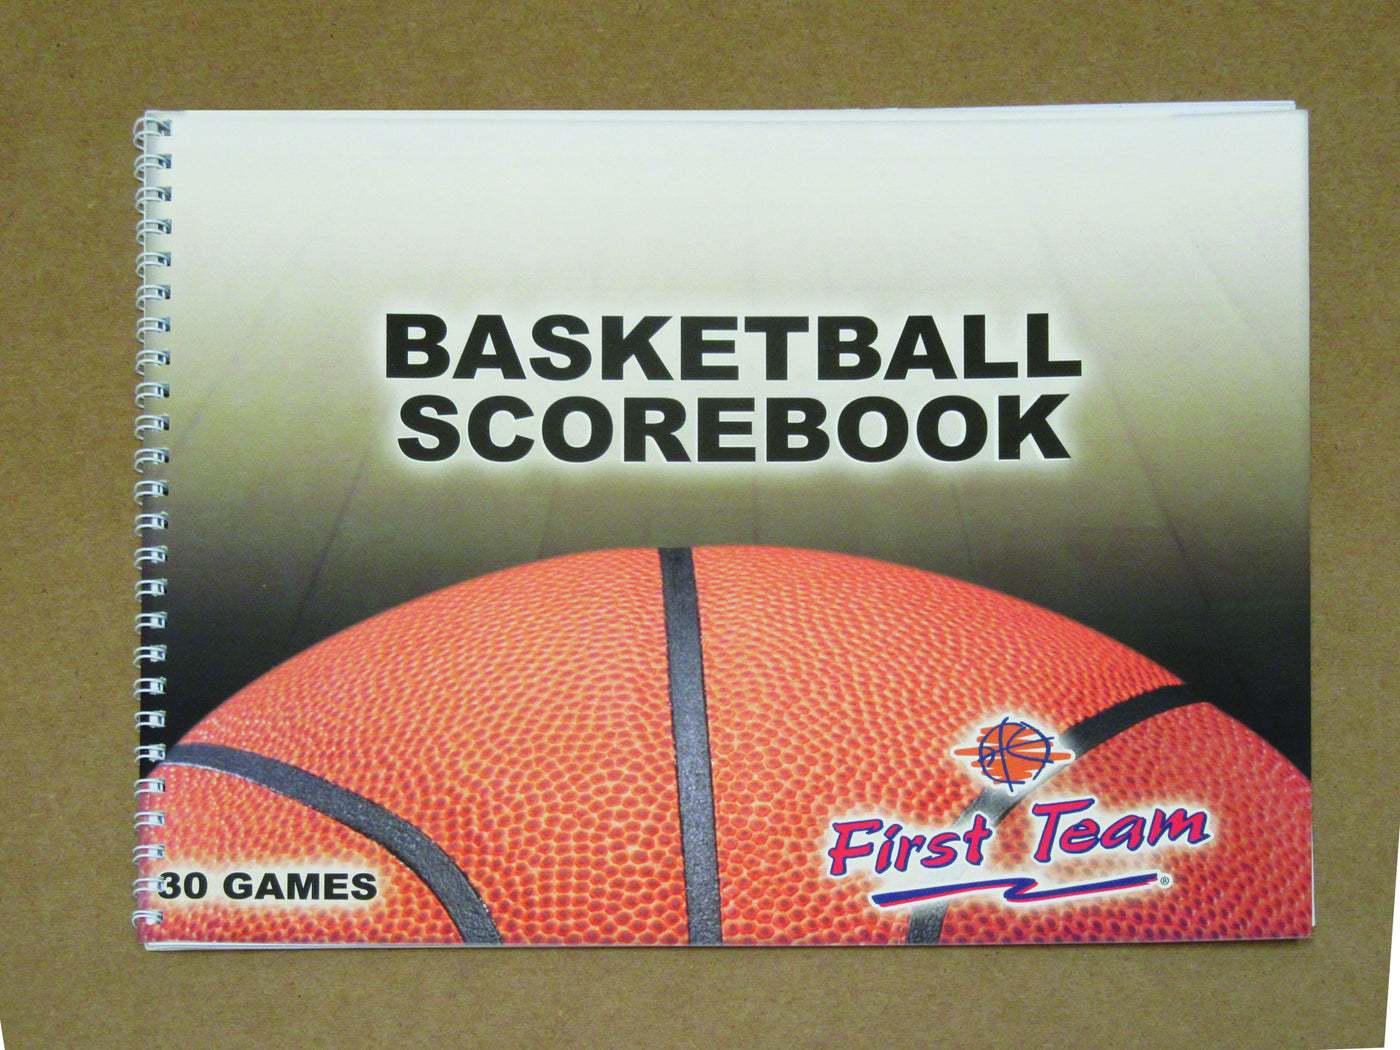 First Team FT14 Basketball Scorebook